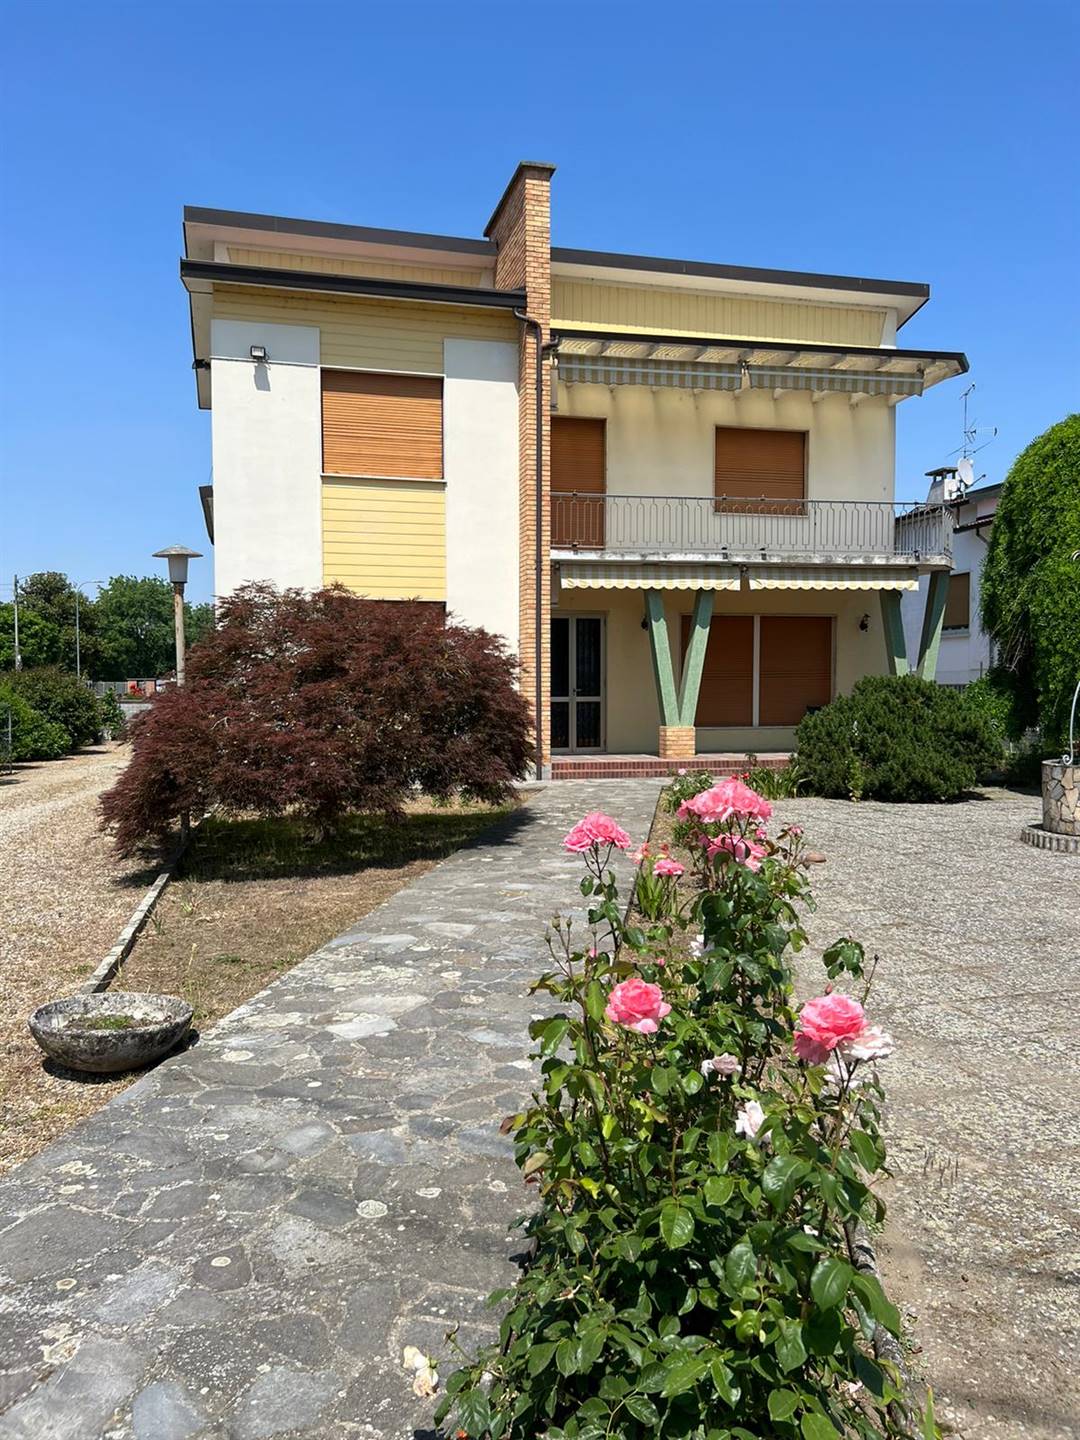 Villa in vendita a Valle Lomellina, 10 locali, prezzo € 220.000 | CambioCasa.it